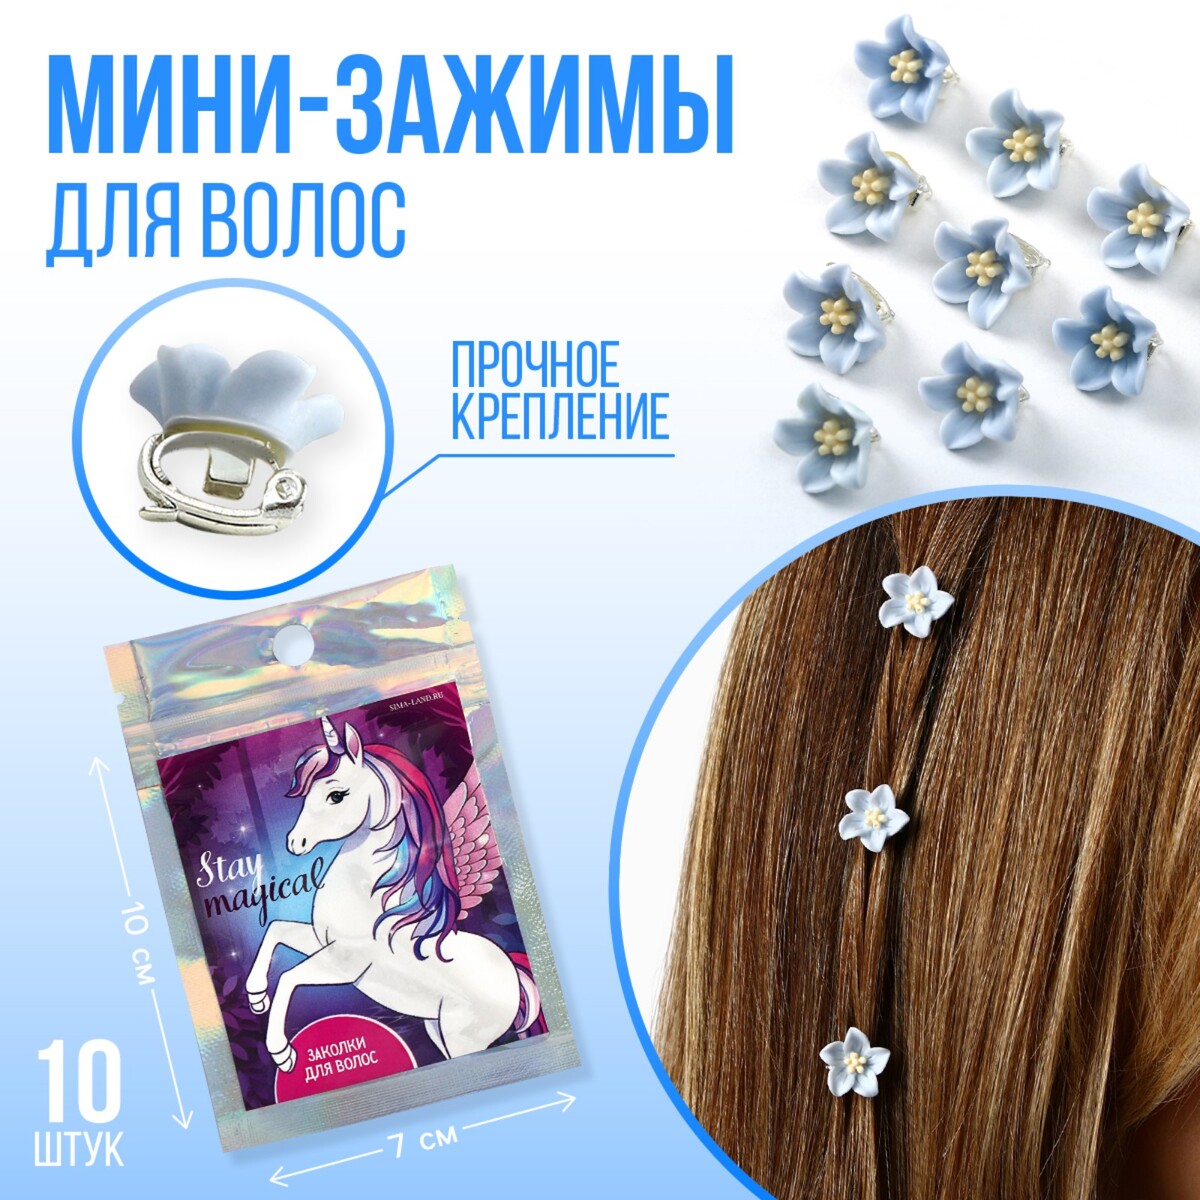 Набор мини-зажимов для украшения волос stay magical, 10 шт., 1.3 х 1.3 х 1.5 см